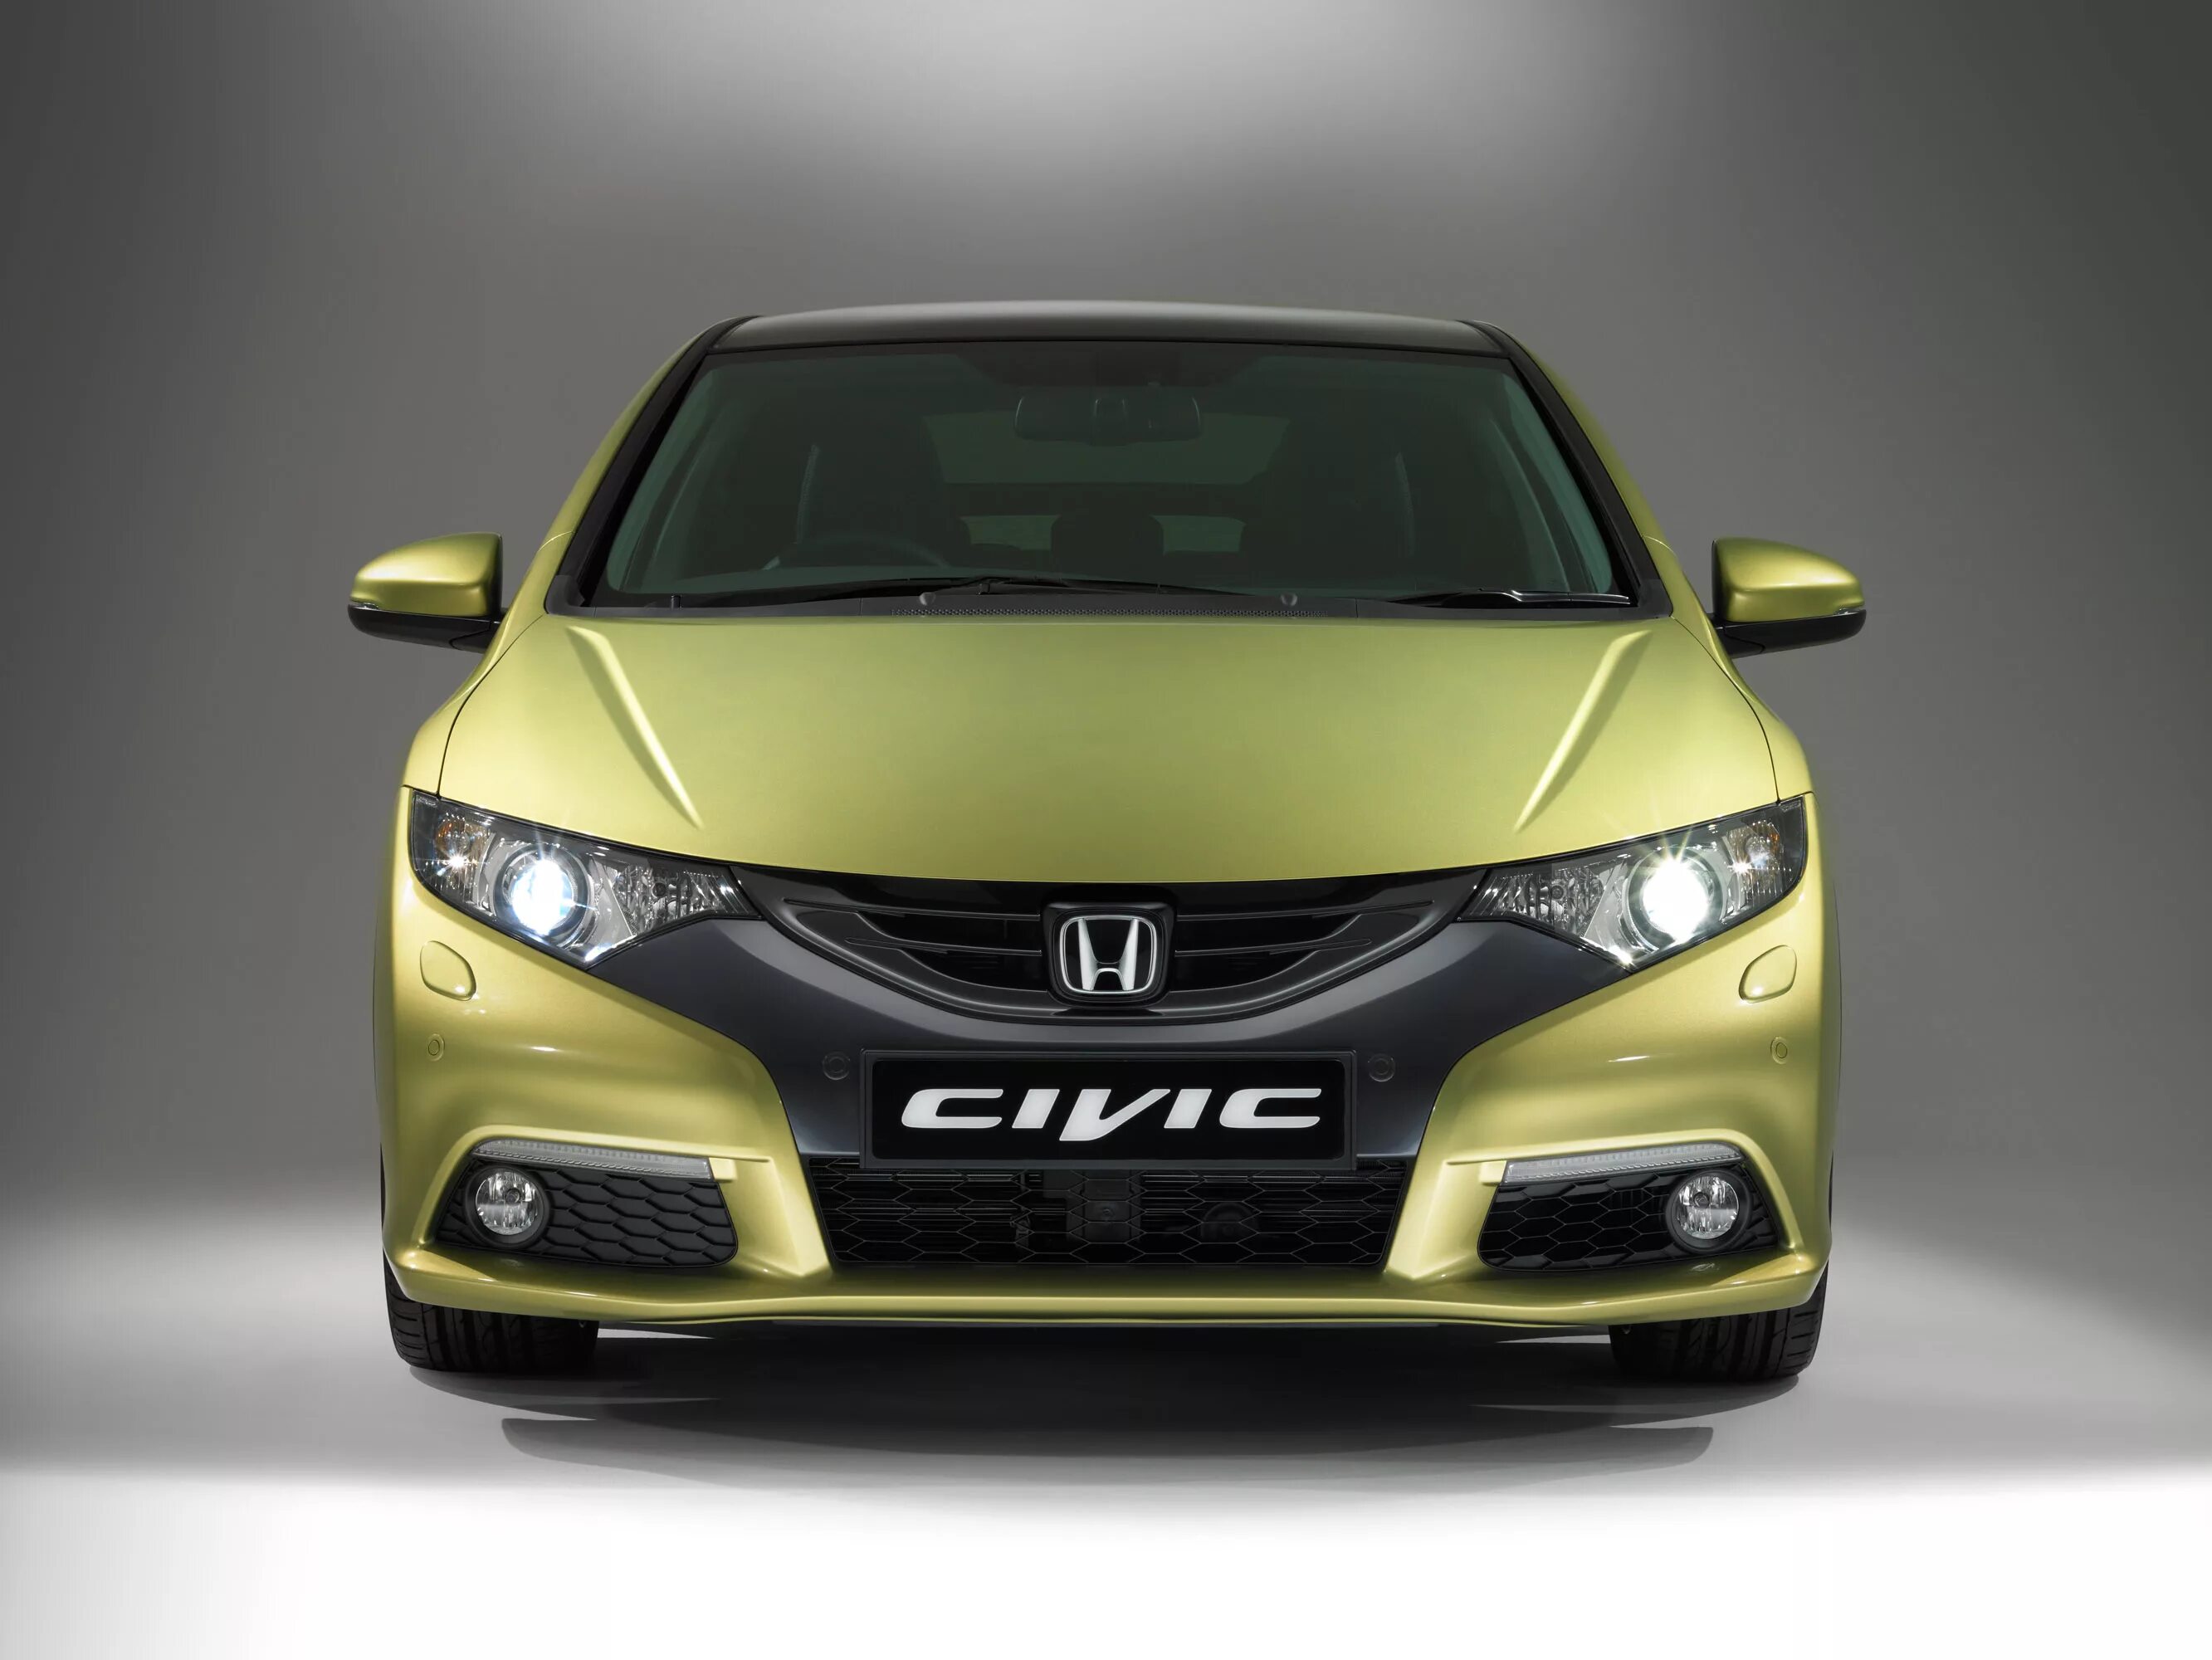 Купить хонду дизель. Honda Civic 2024. Honda Civic 1.8 MT. Honda Civic 5d дизель. Хонда Цивик 2024 хэтч.